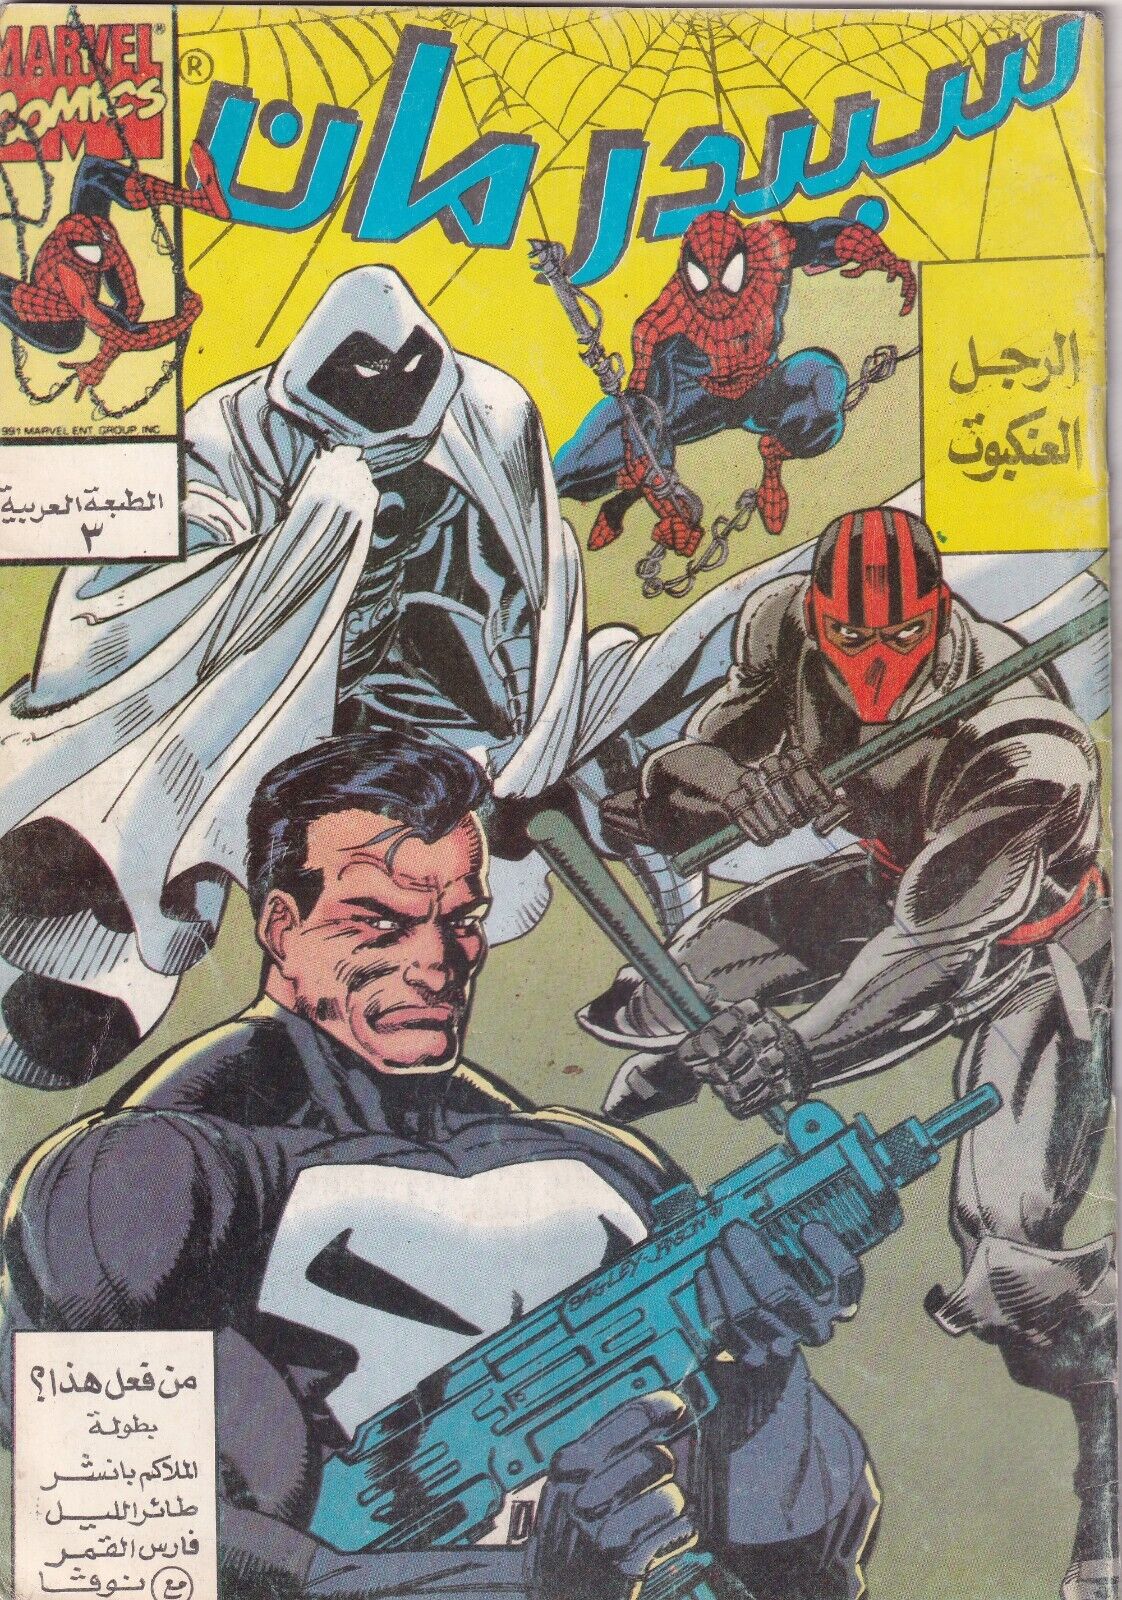 MARVEL - EGYPT Arabic Comics Spider-Man Magazine NO 3